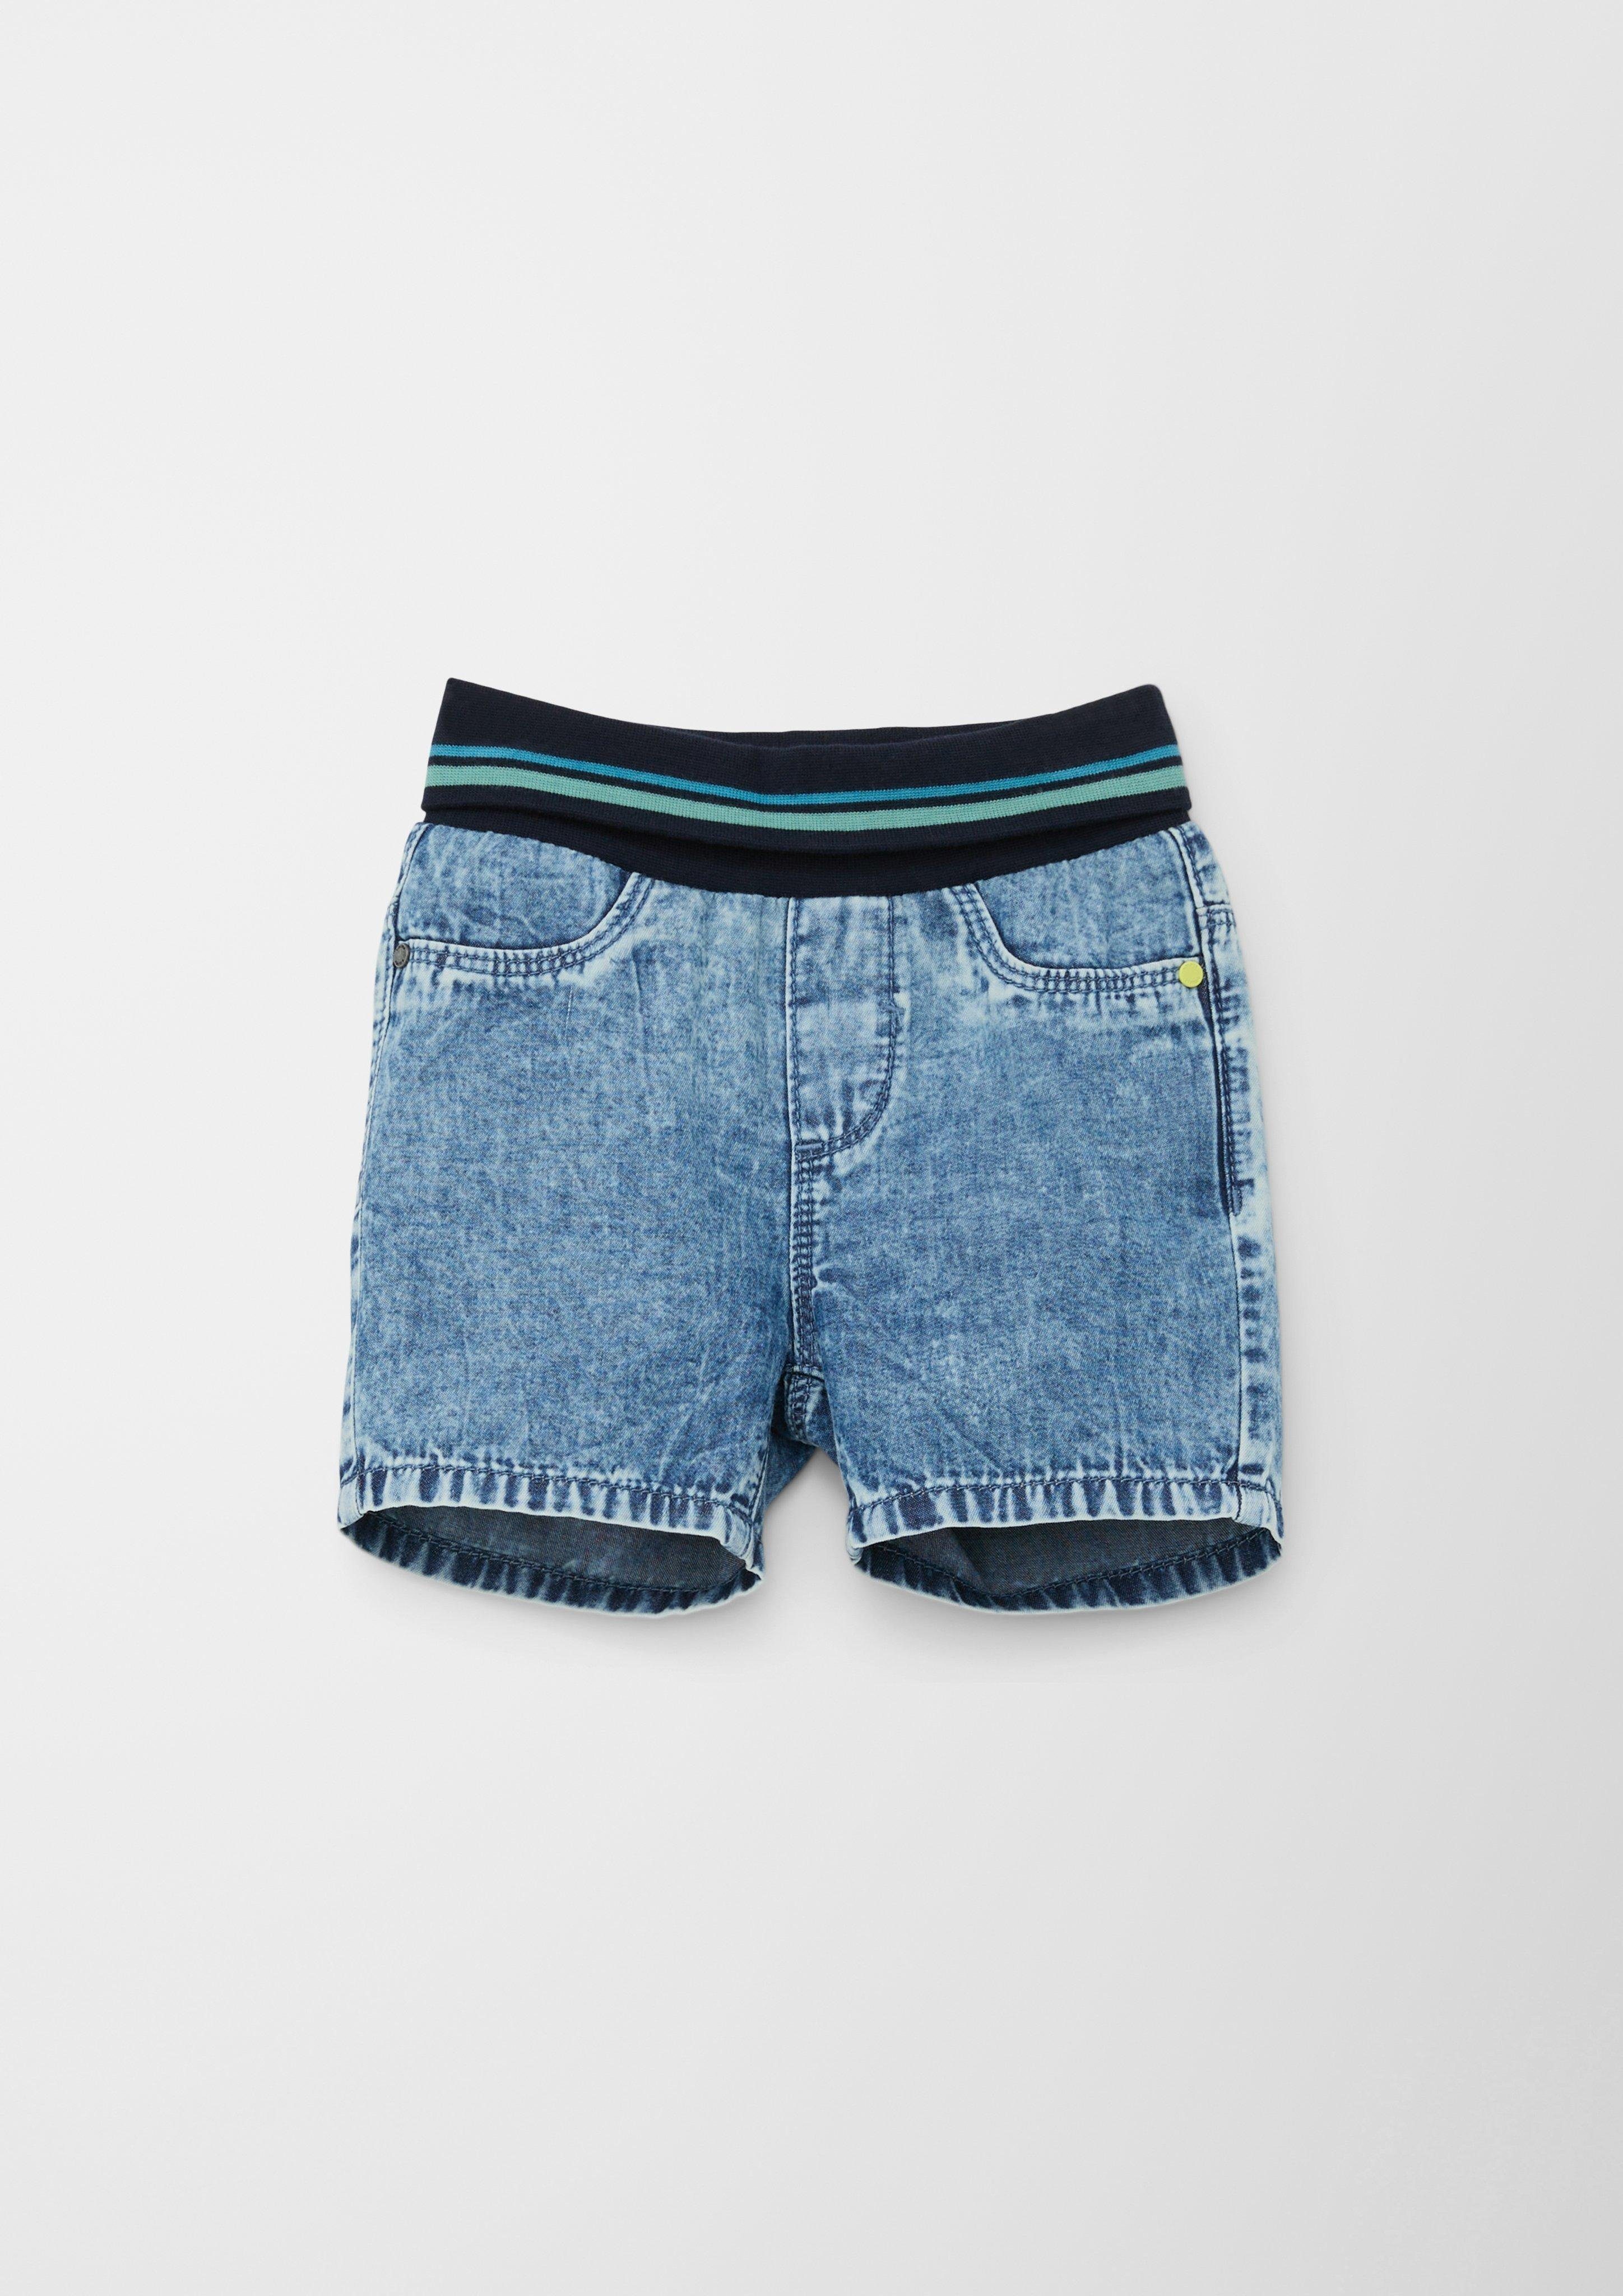 s.Oliver Shorts Leg / Jeans-Shorts Kontrast-Details Rise High Fit Regular / / Straight